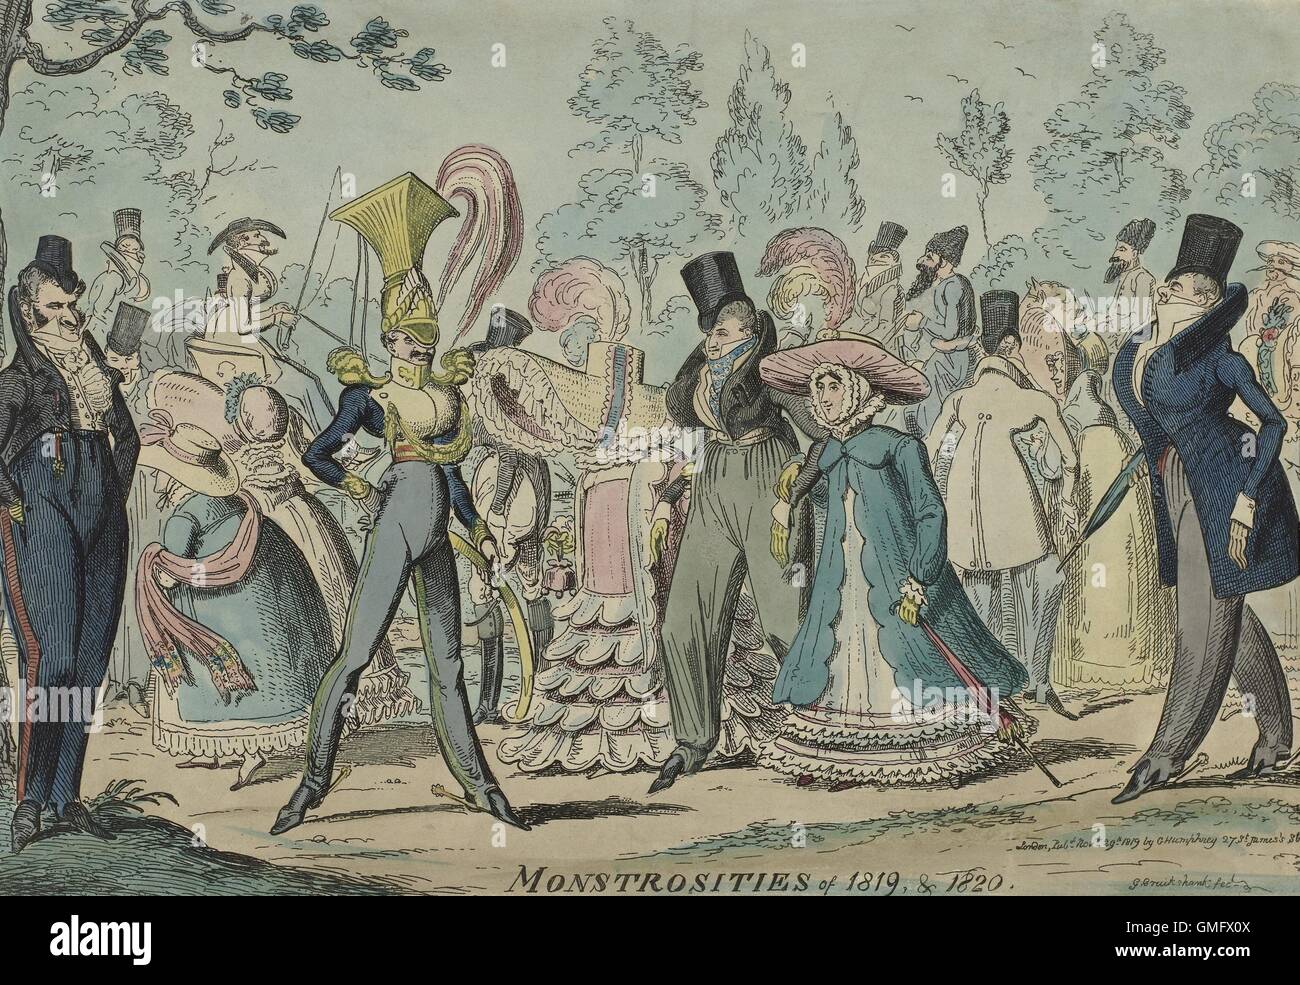 Monstrositäten der 1819 & 1820 von George Cruikshank, George Humphrey, 1819, Englisch drucken. Karikatur von Mode-Trends (BSLOC 2016 2 120) Stockfoto